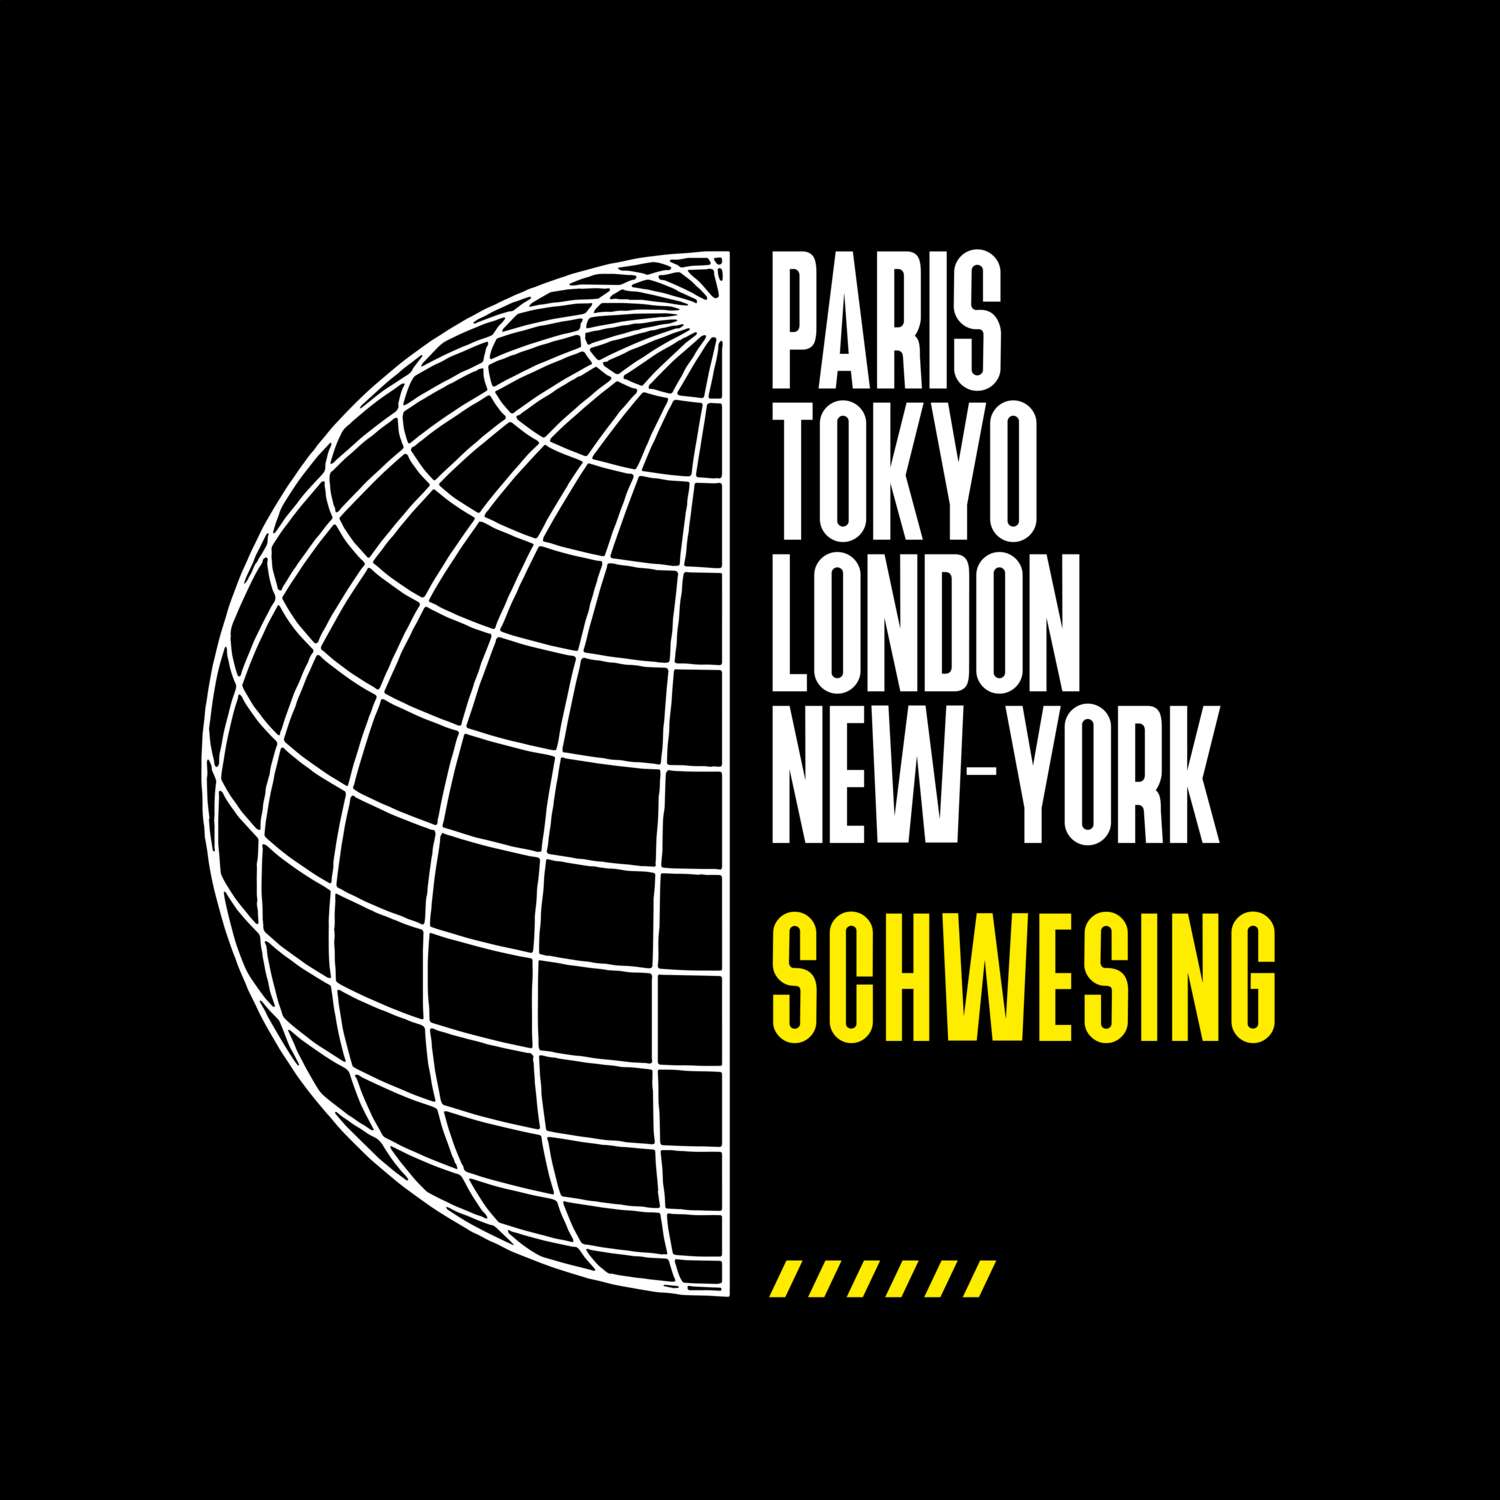 Schwesing T-Shirt »Paris Tokyo London«